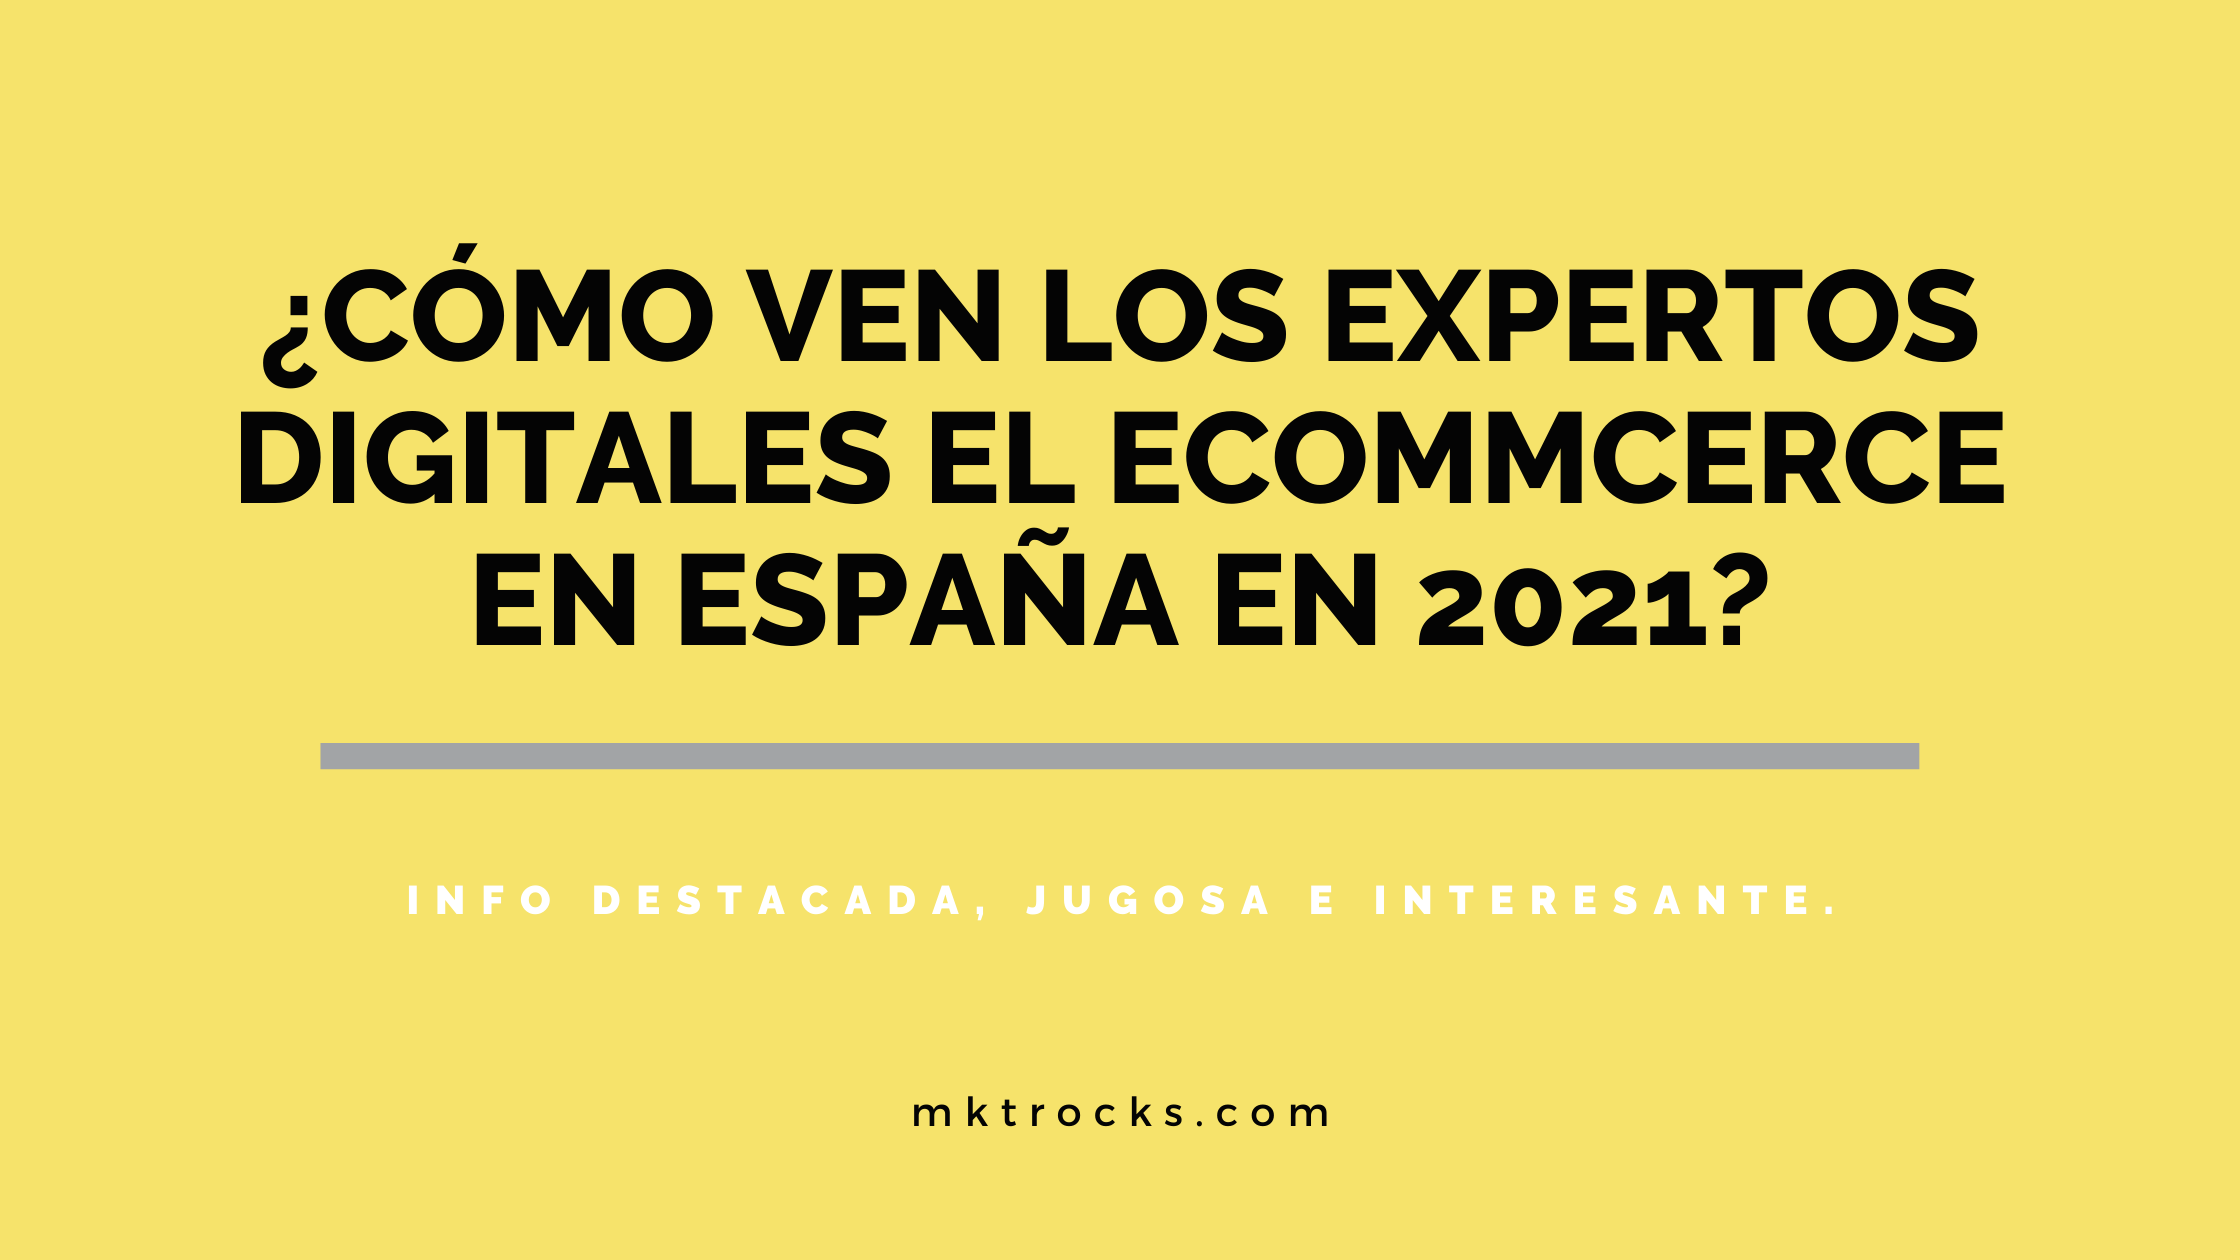 ¿Cómo ven los expertos digitales el ecommerce en España en 2021? - Informe Ecommerce